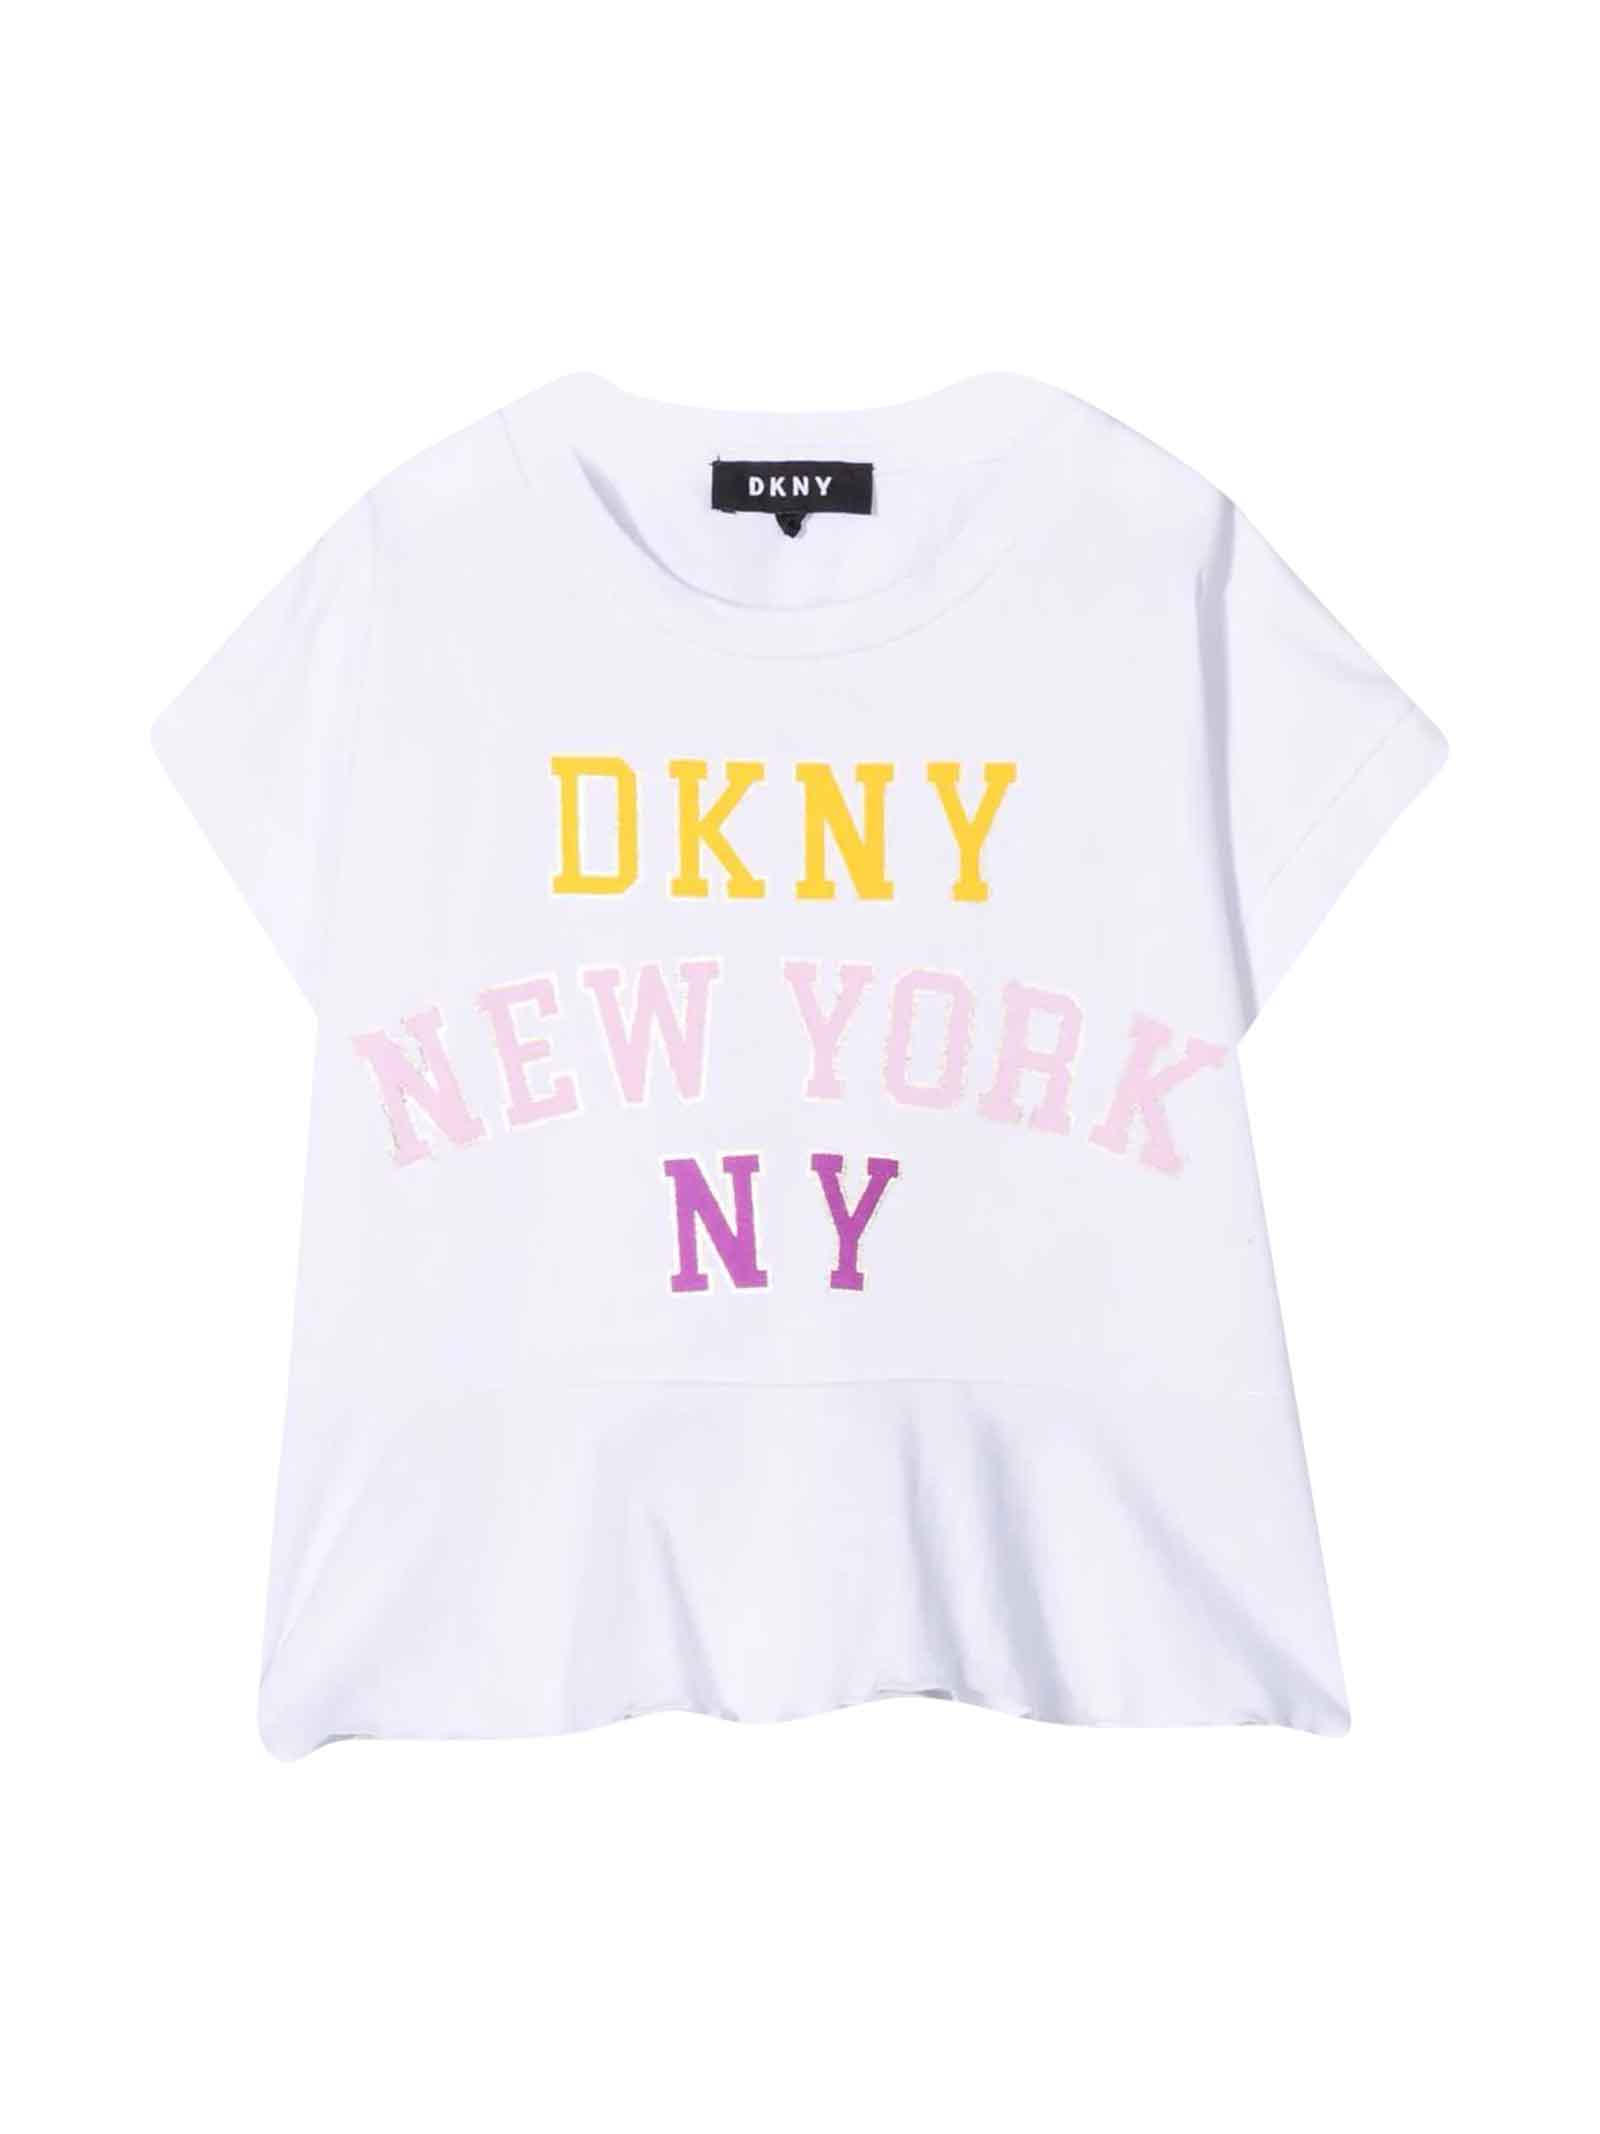 DKNY White T-shirt Teen Girl